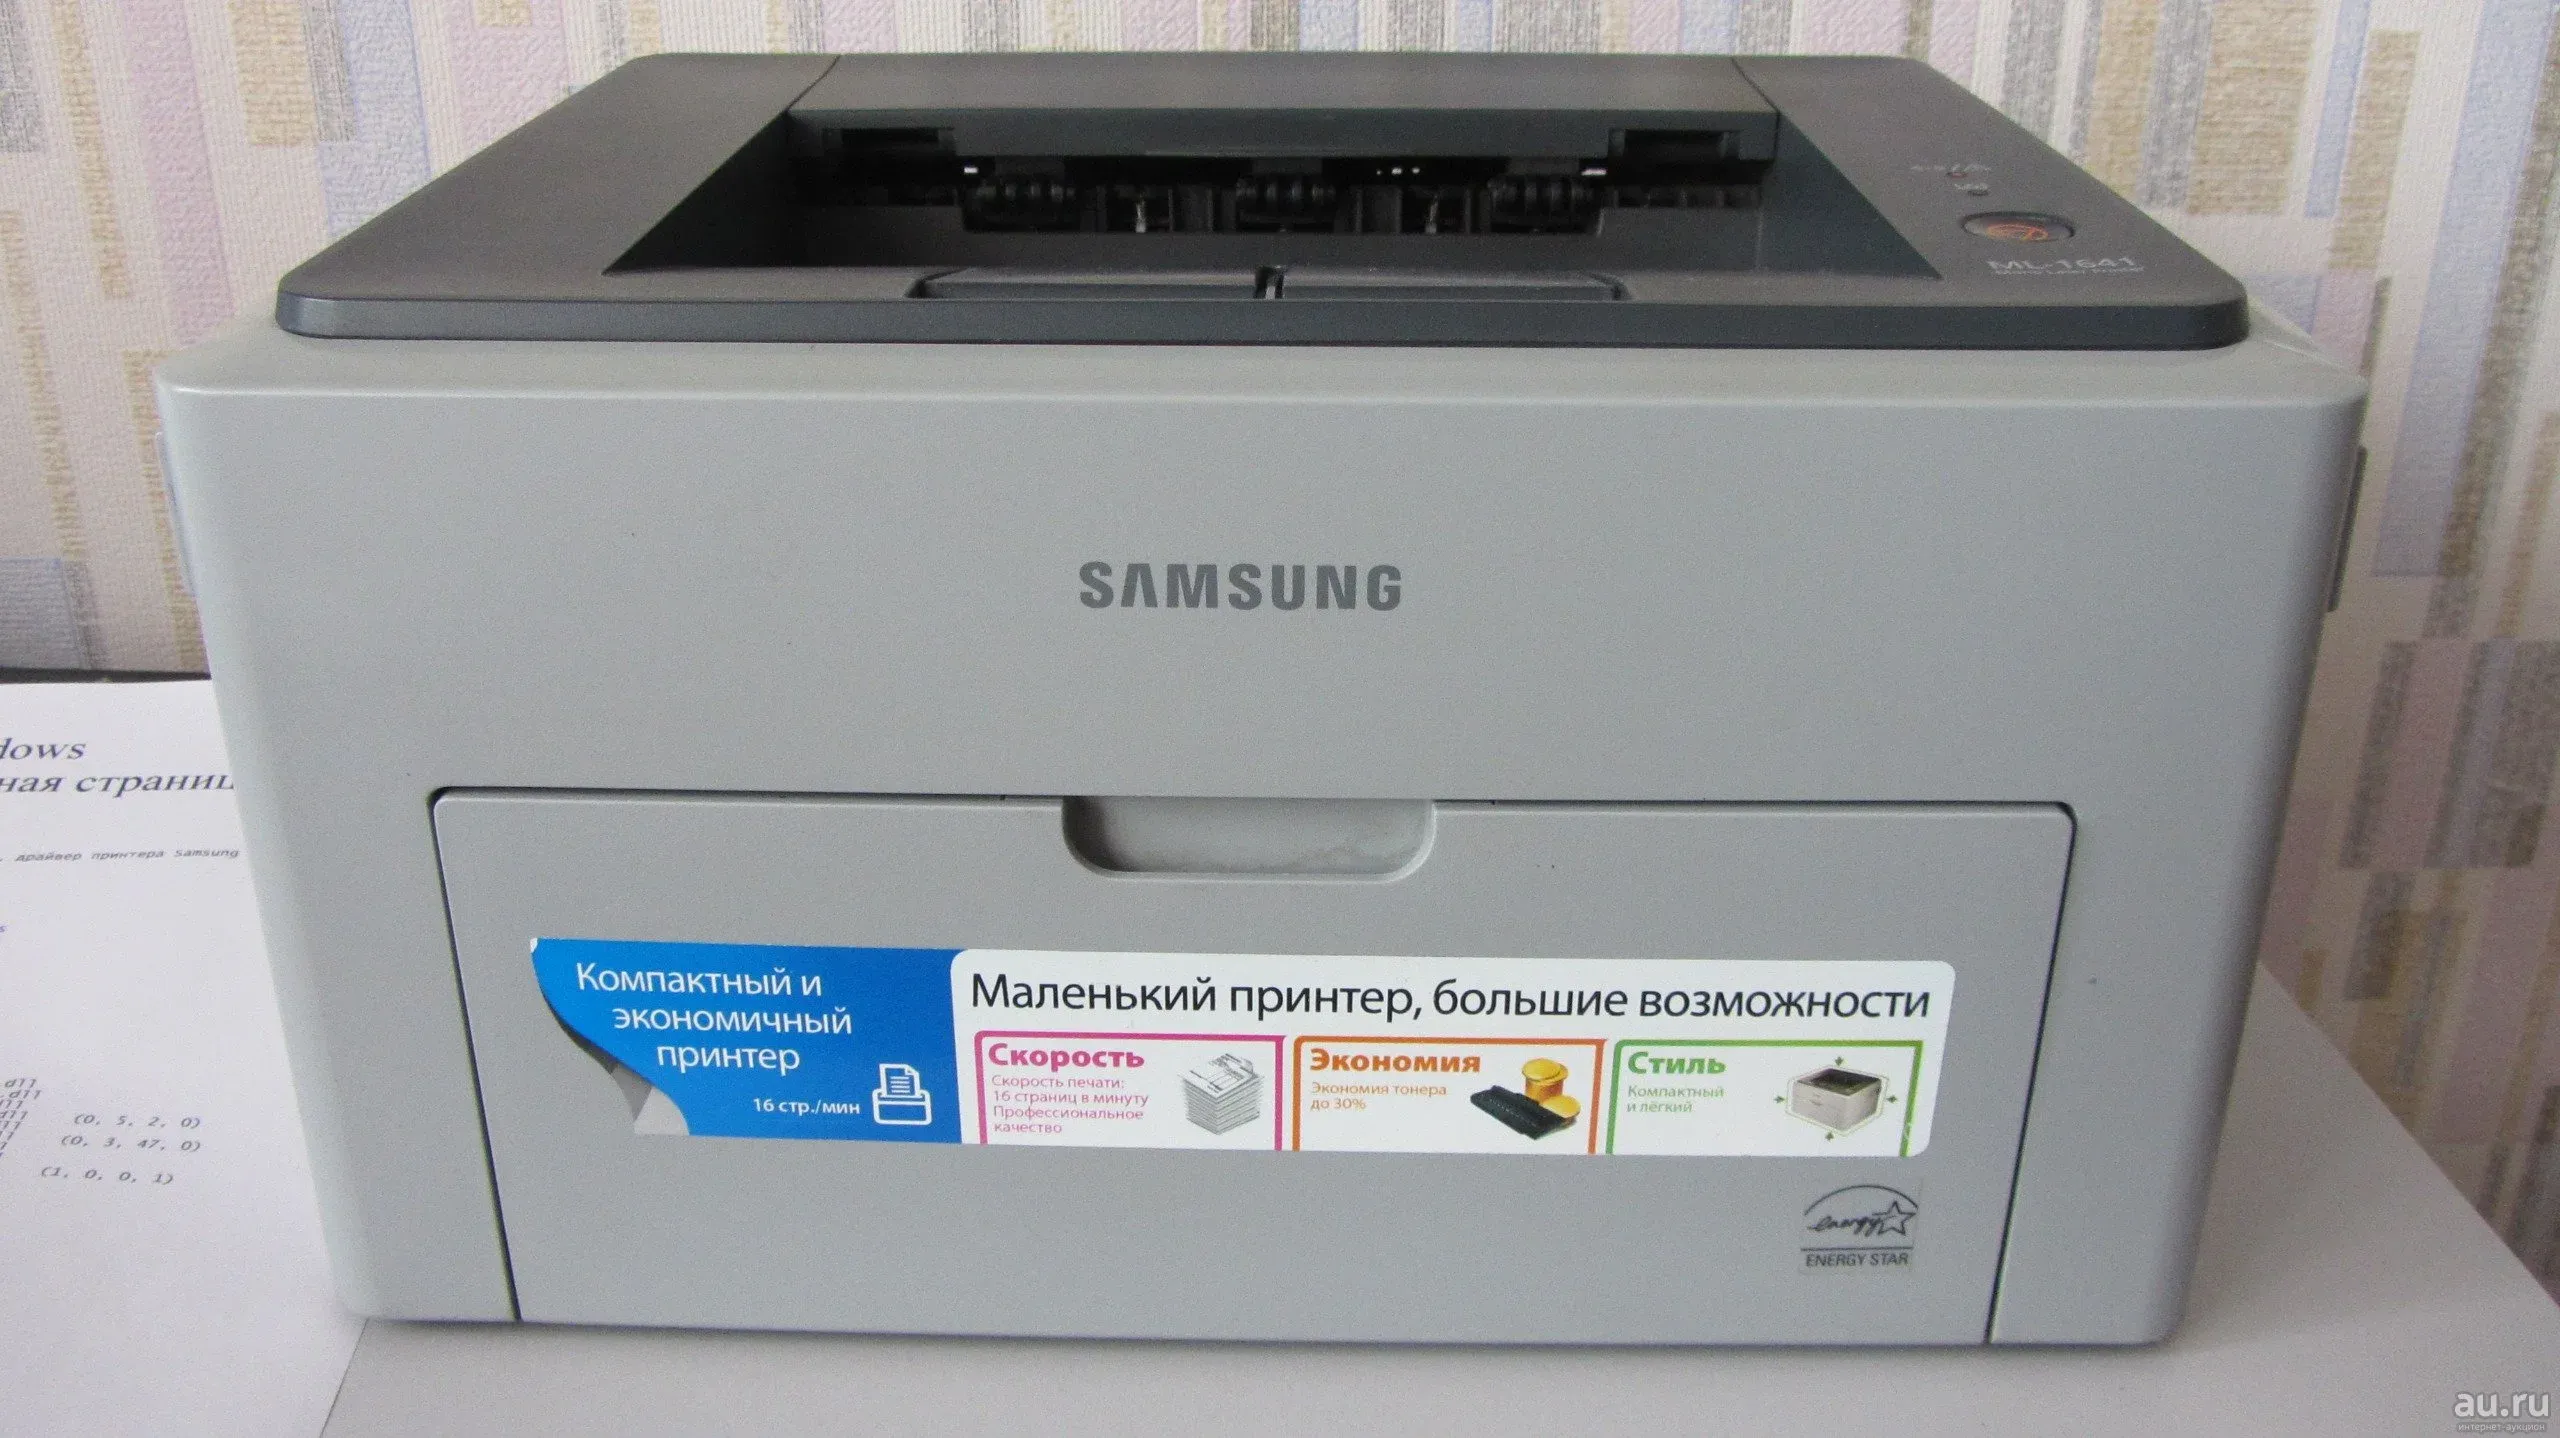 Samsung ml 10. Принтер самсунг 1641. Принтер Samsung ml-1641. Принтер лазерный Samsung 1641. Принтер самсунг ml 1641 картридж.